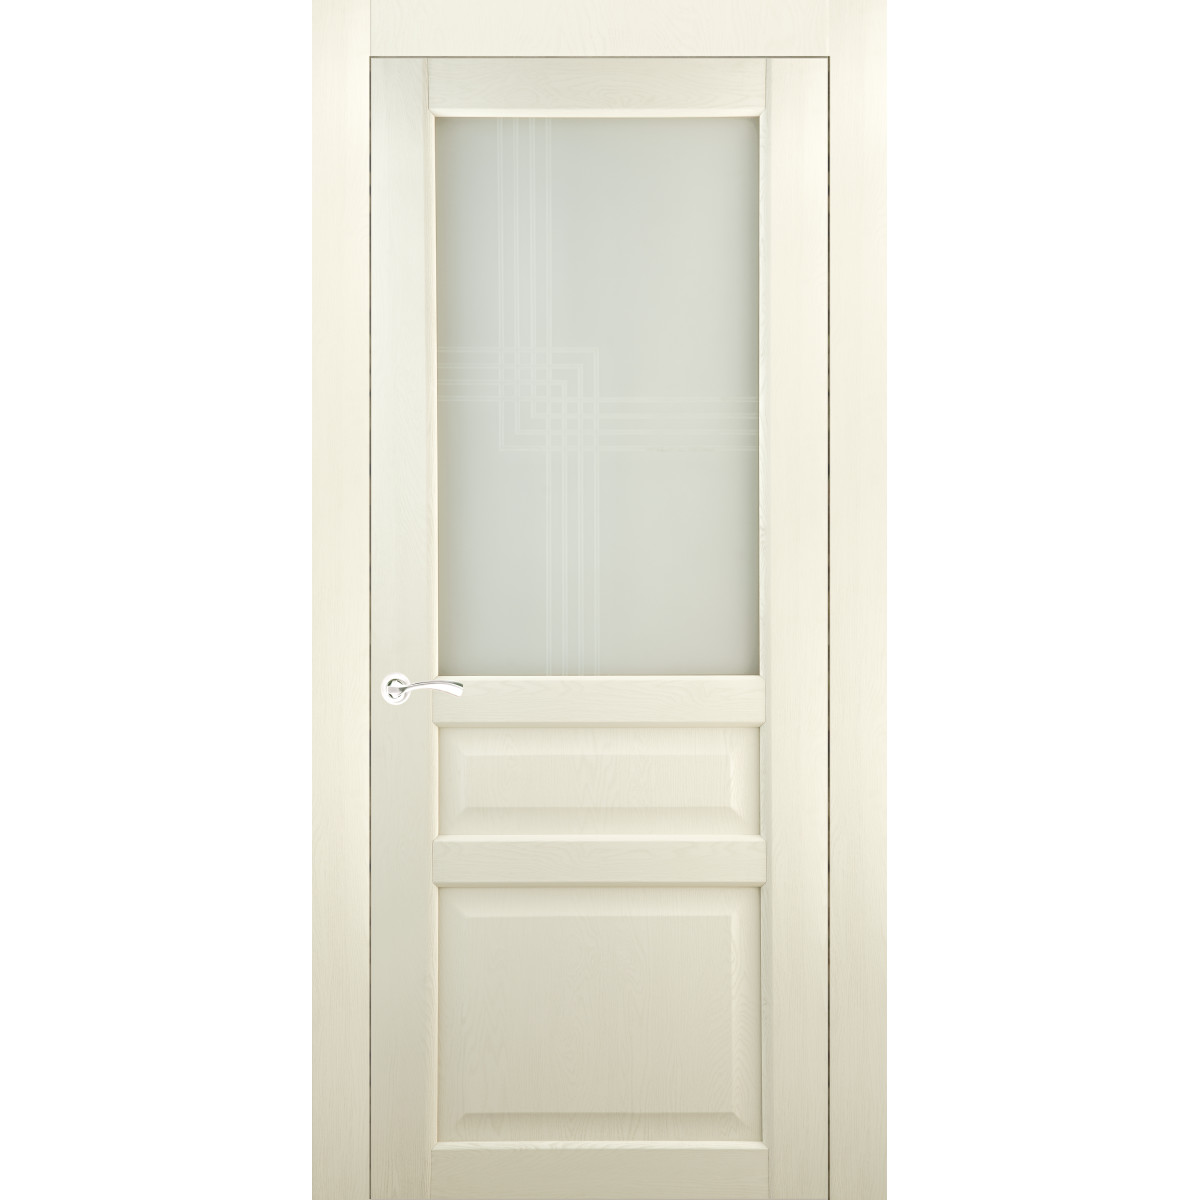 Дверь межкомнатная остеклённая Artens Мария 80x200 см, ПВХ, цвет айвори, с замком в комплекте